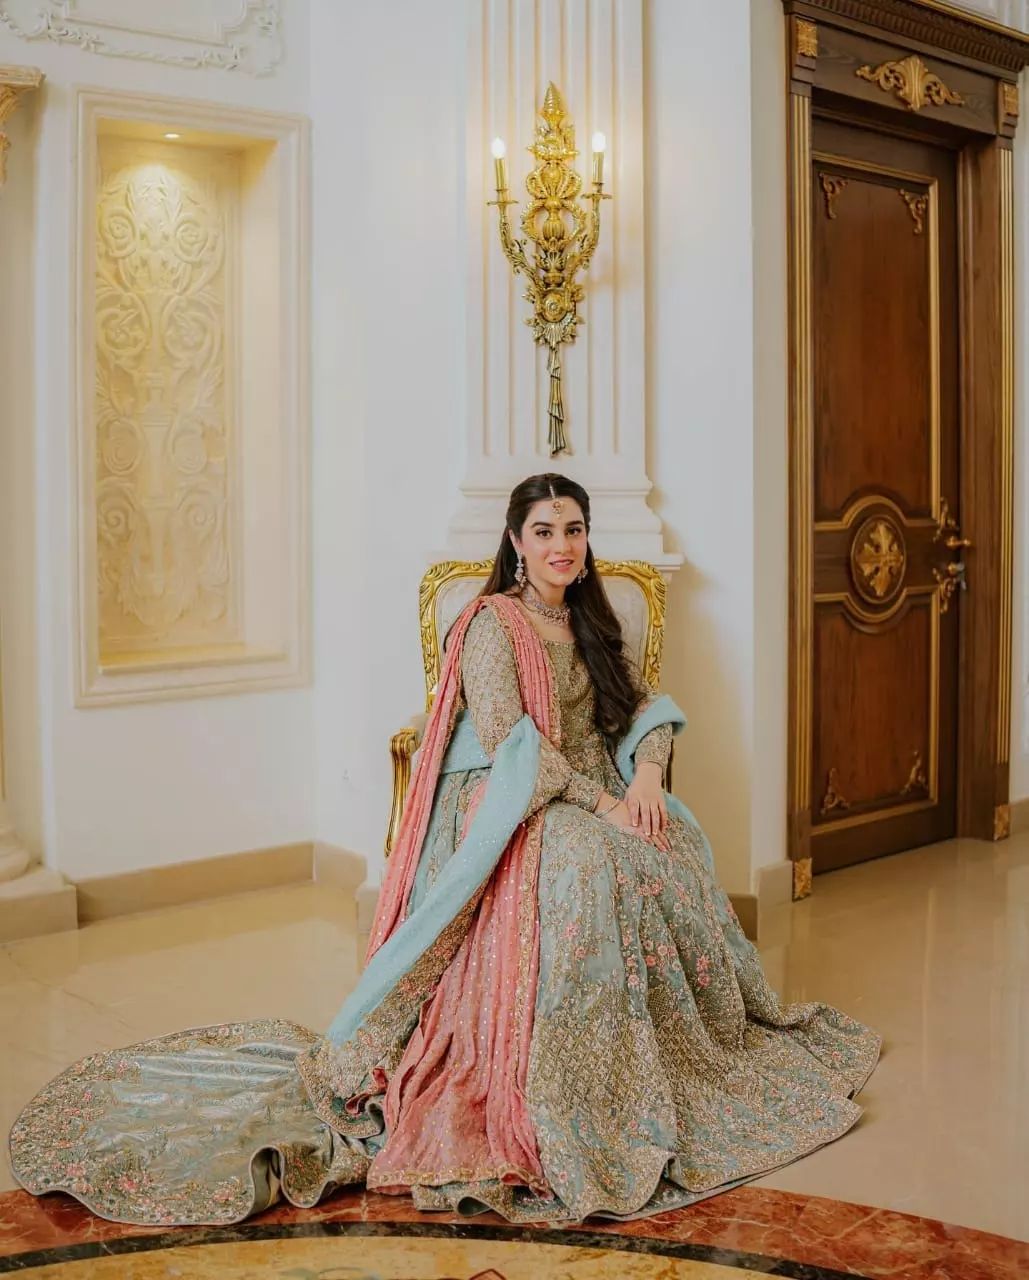 Turquoise Elegant Heavy Designer Work Lehenga Choli And Jacket Style Suit -  Indian Heavy Anarkali Lehenga Gowns Sharara Sarees Pakistani Dresses in  USA/UK/Canada/UAE - IndiaBoulevard